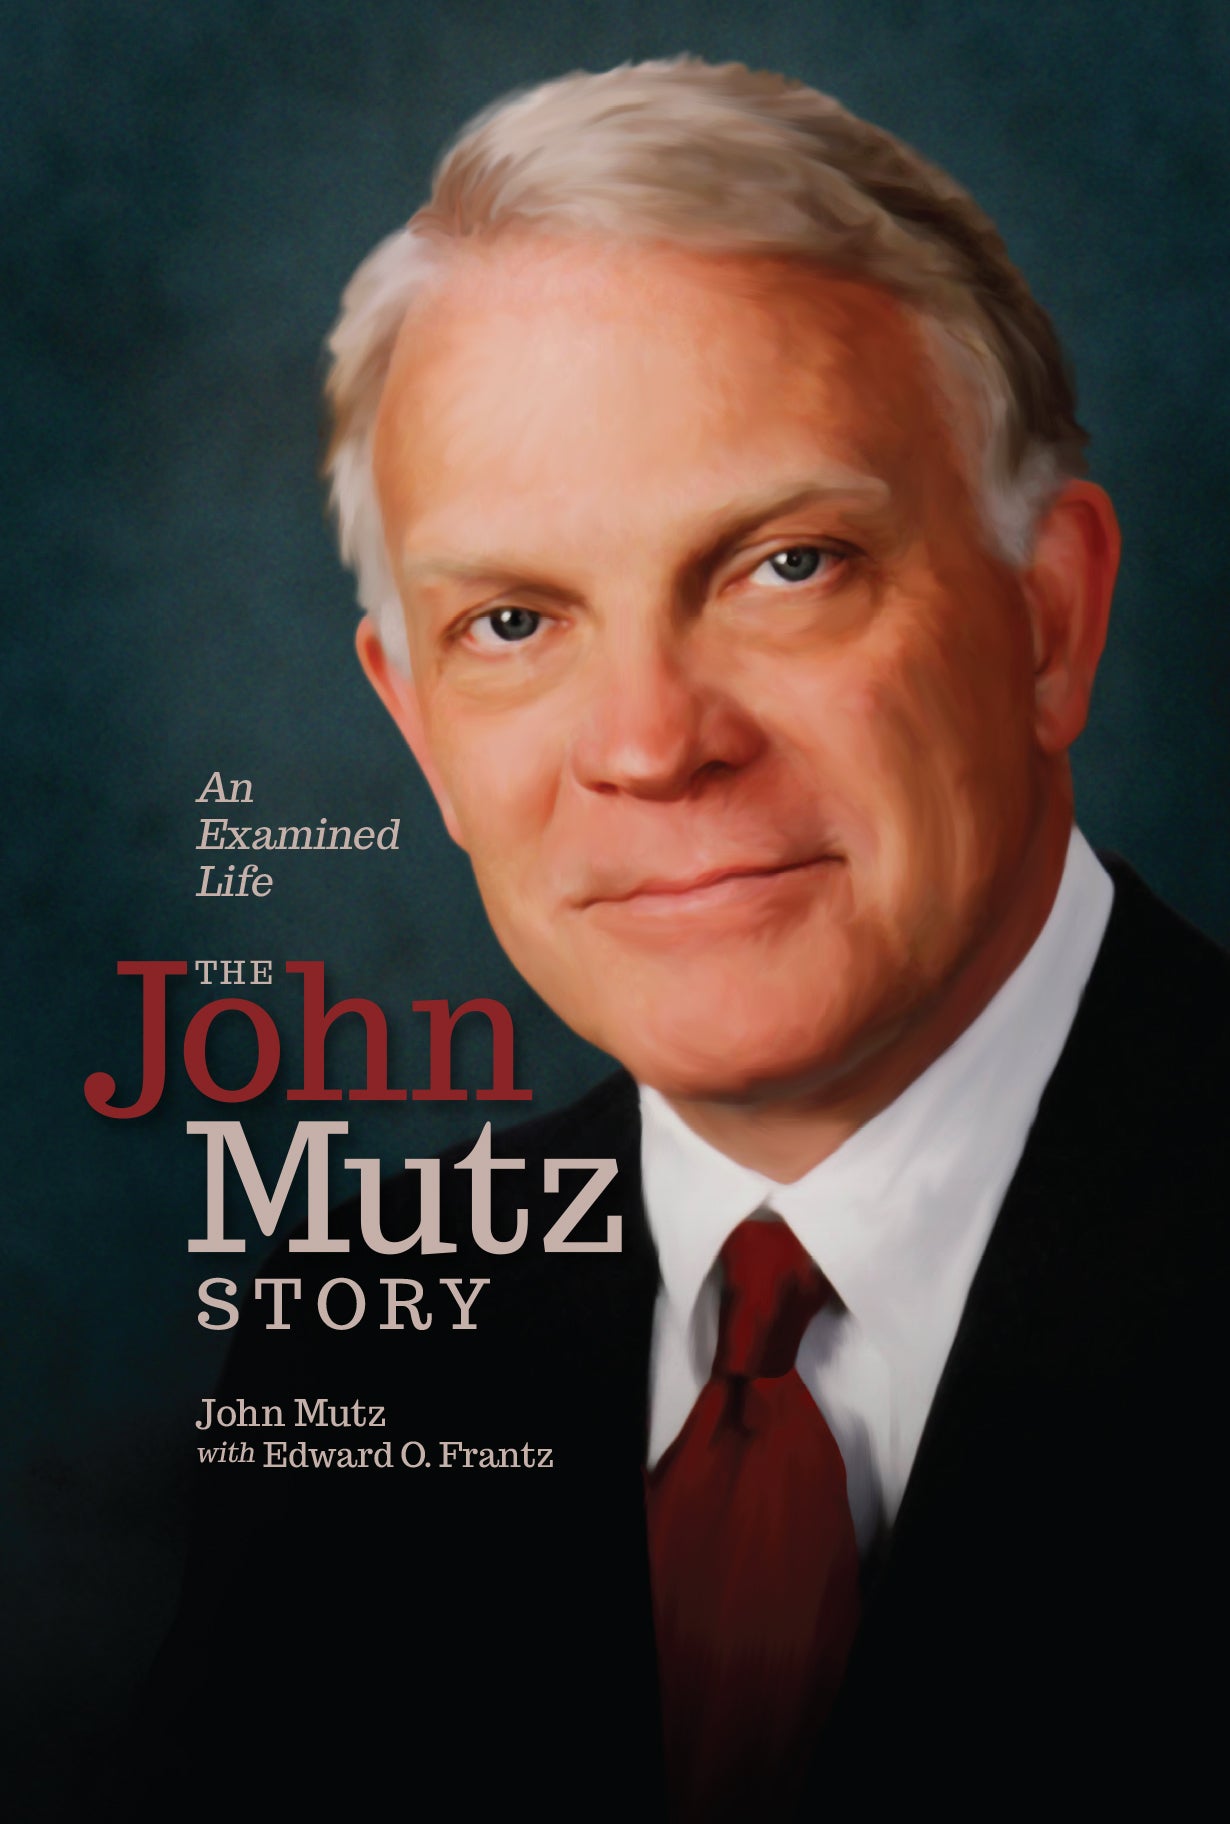 An Examined Life: The John Mutz Story